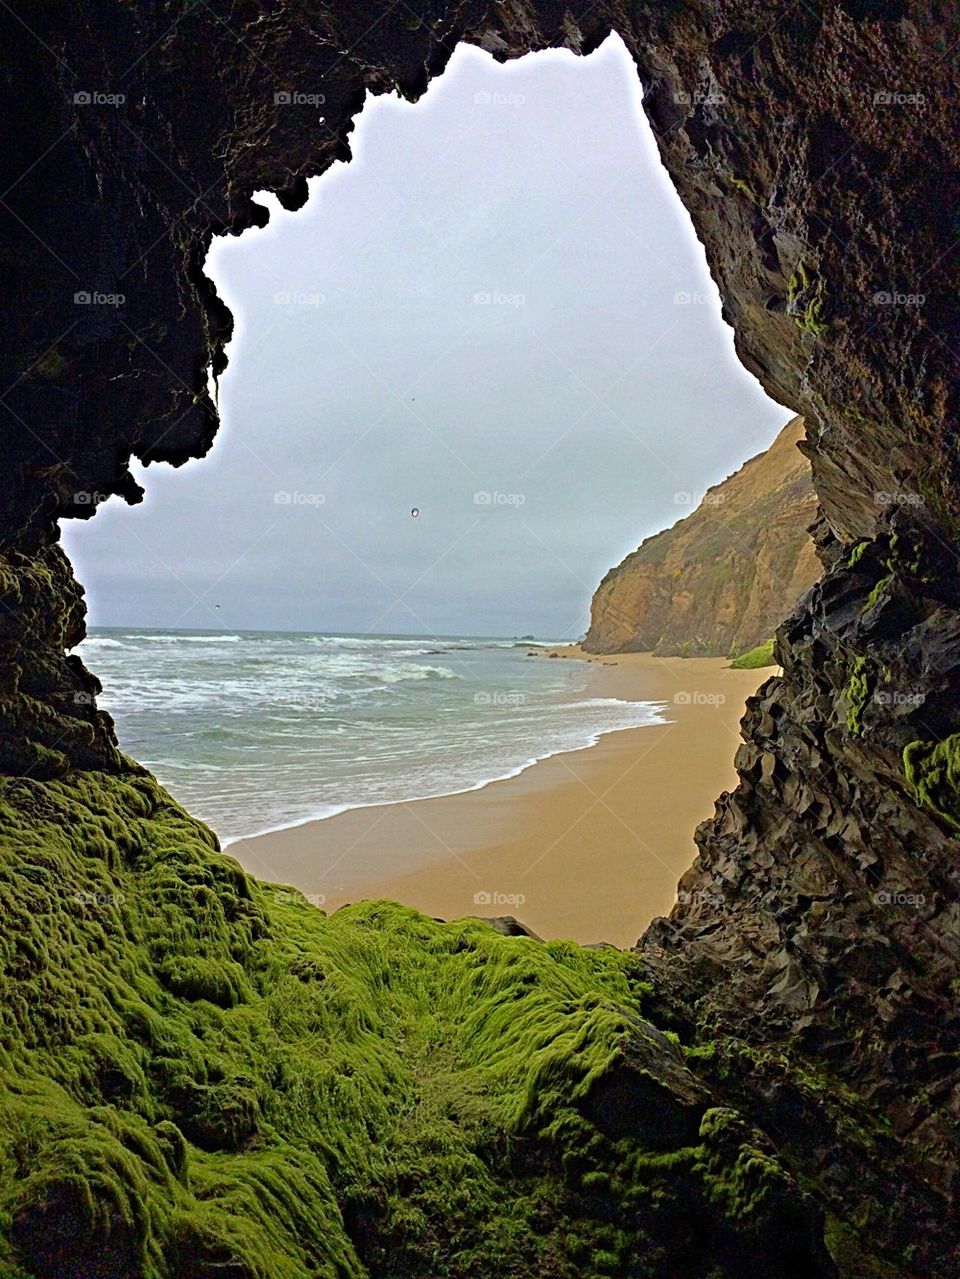 Inside the rock